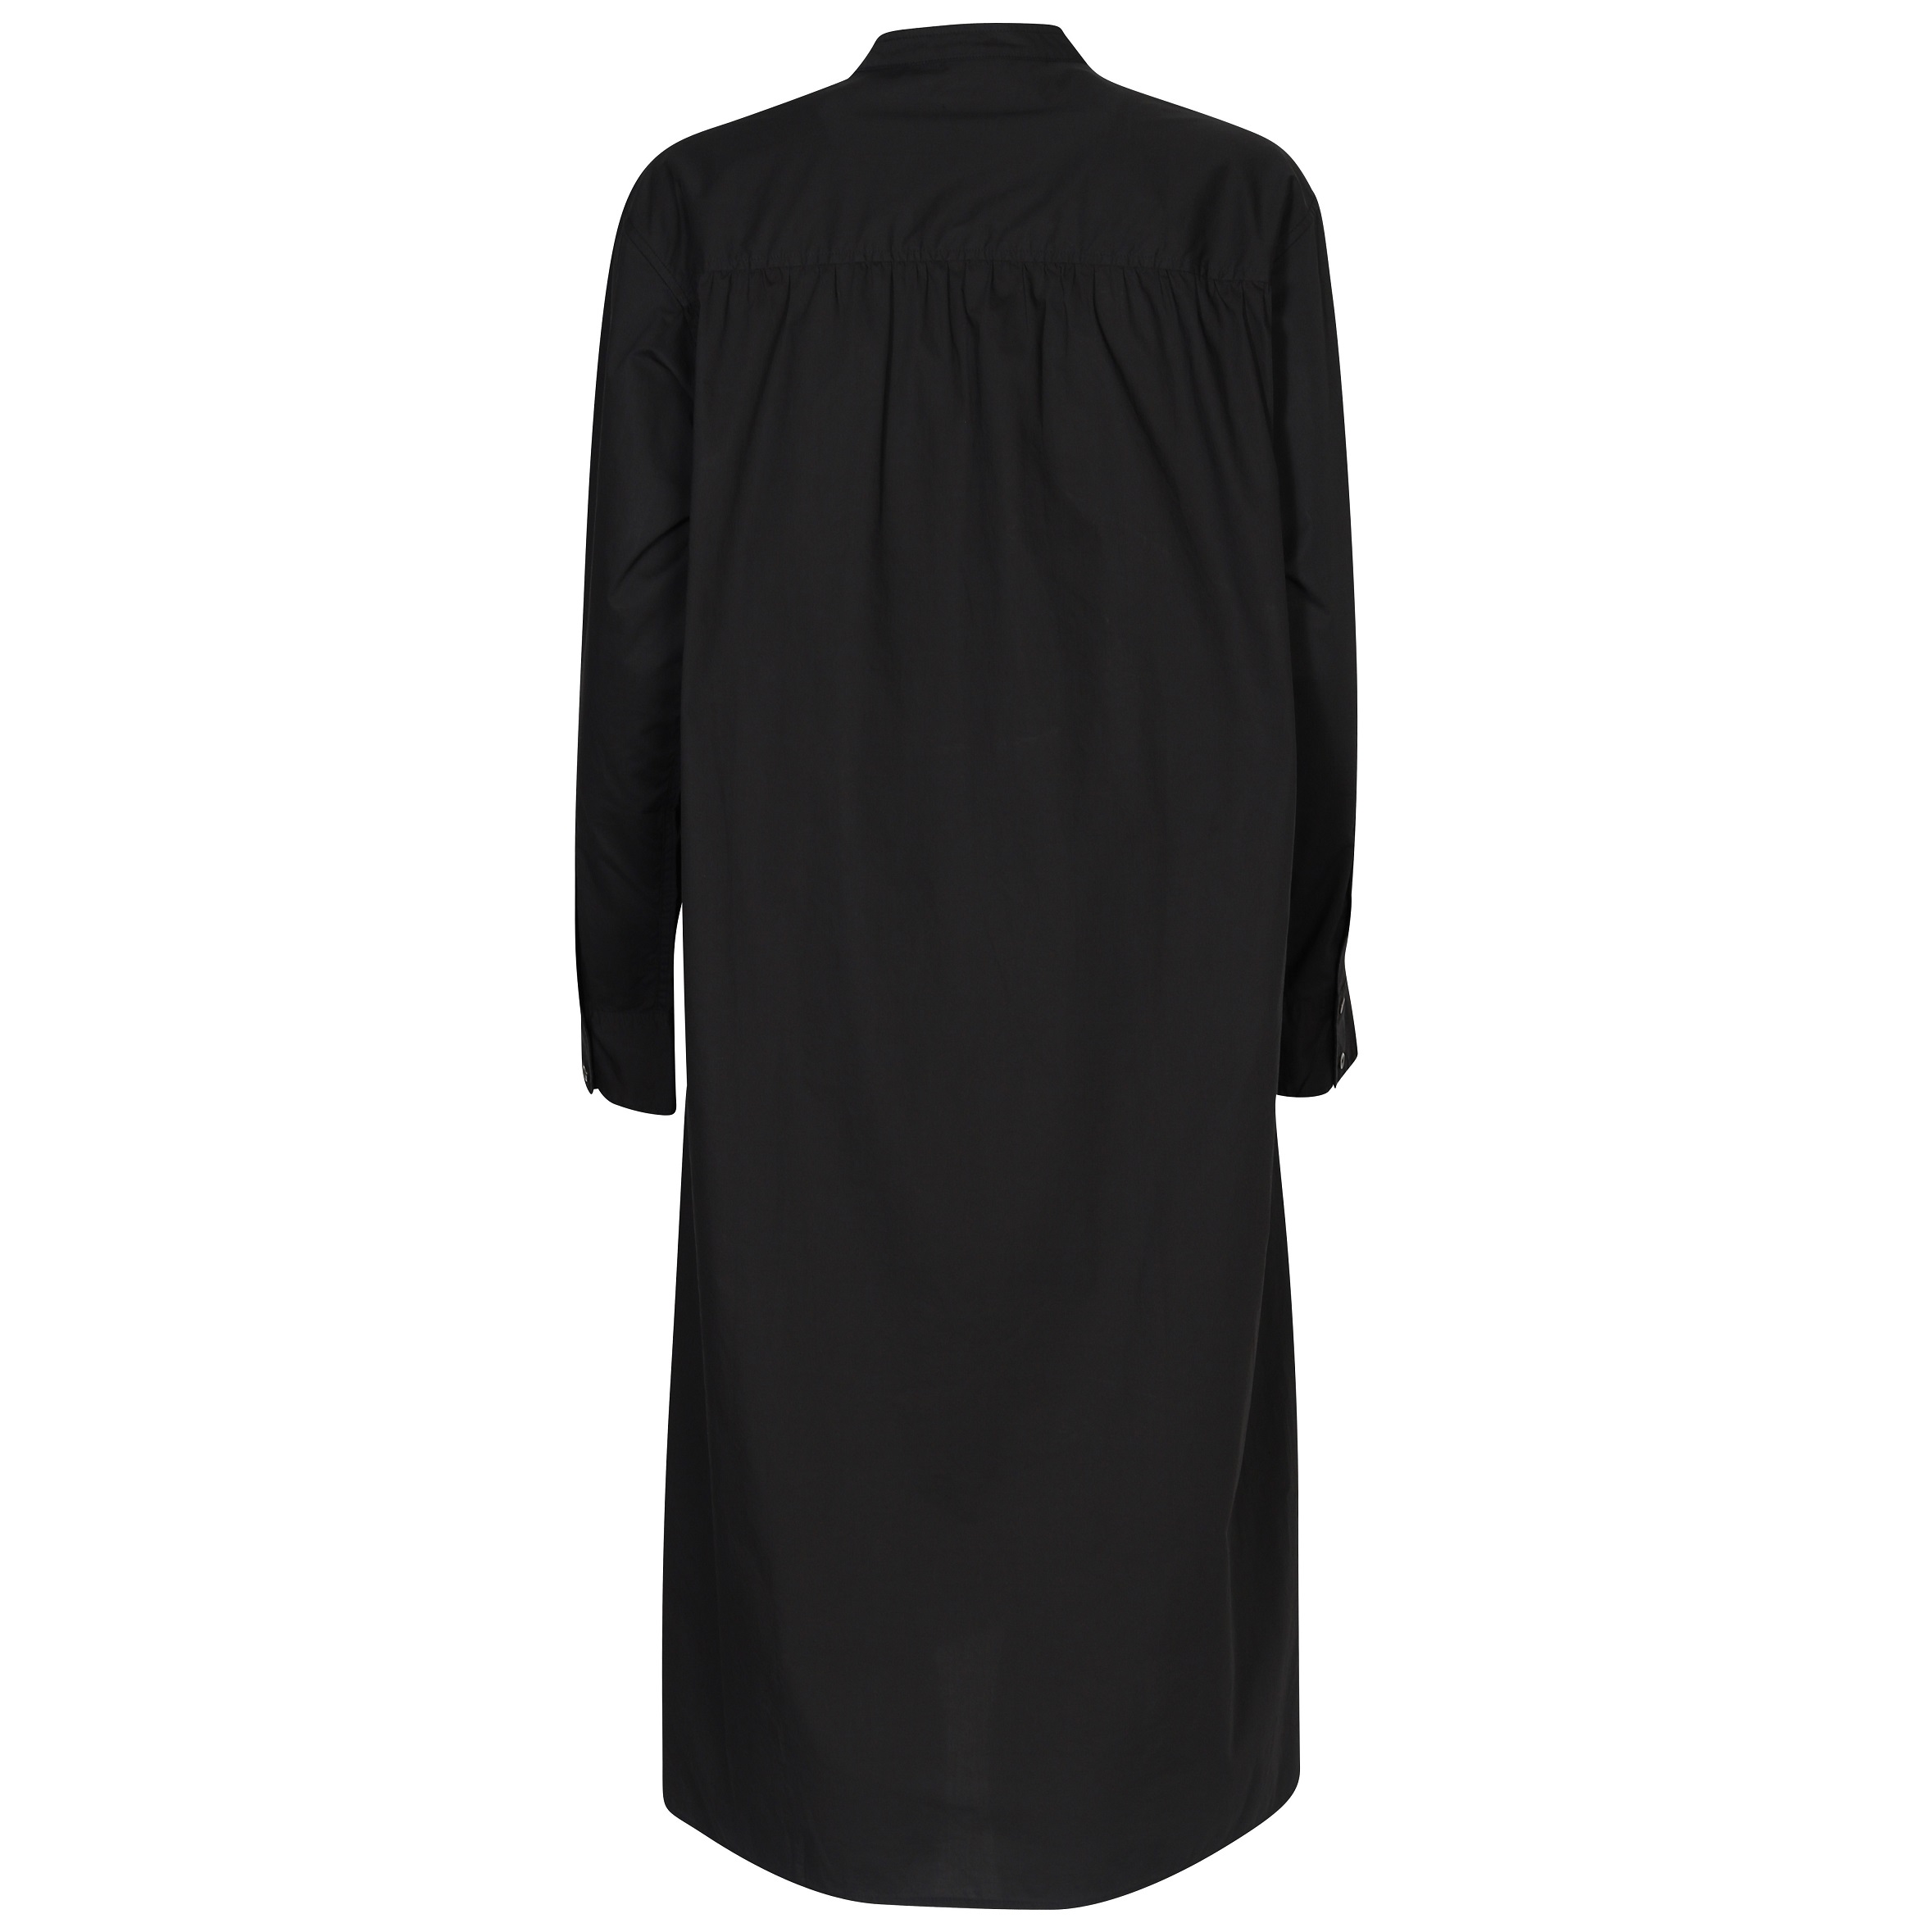 6397 Tuxedo Shirt Dress in Black XS